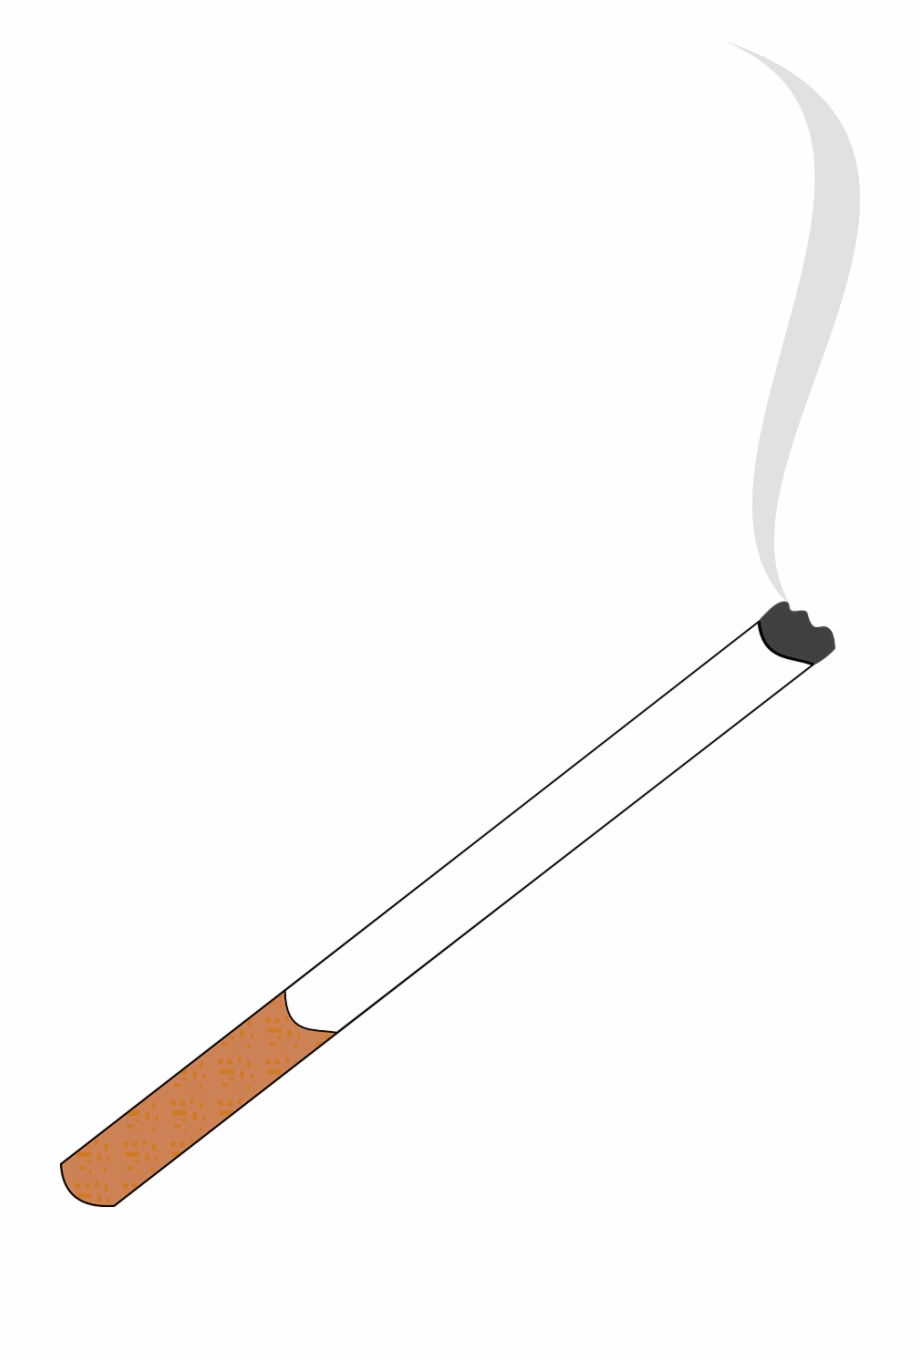 Cigarette Smoking Smoke Tobacco Png Image Transparent Smoking